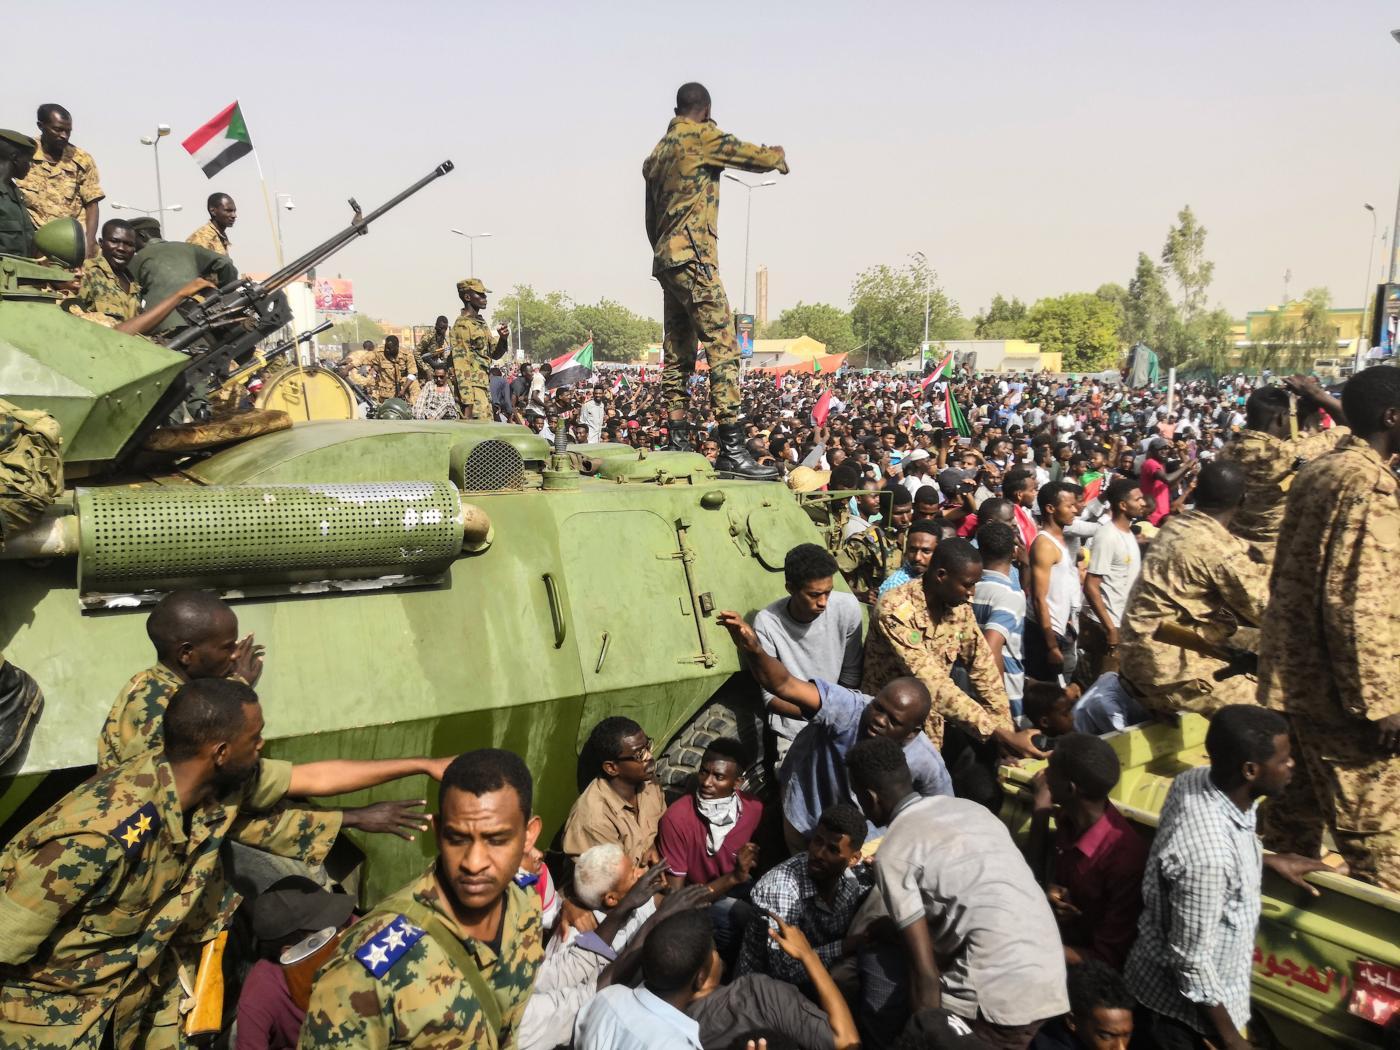 Soudan: La junte militaire promet un gouvernement civil